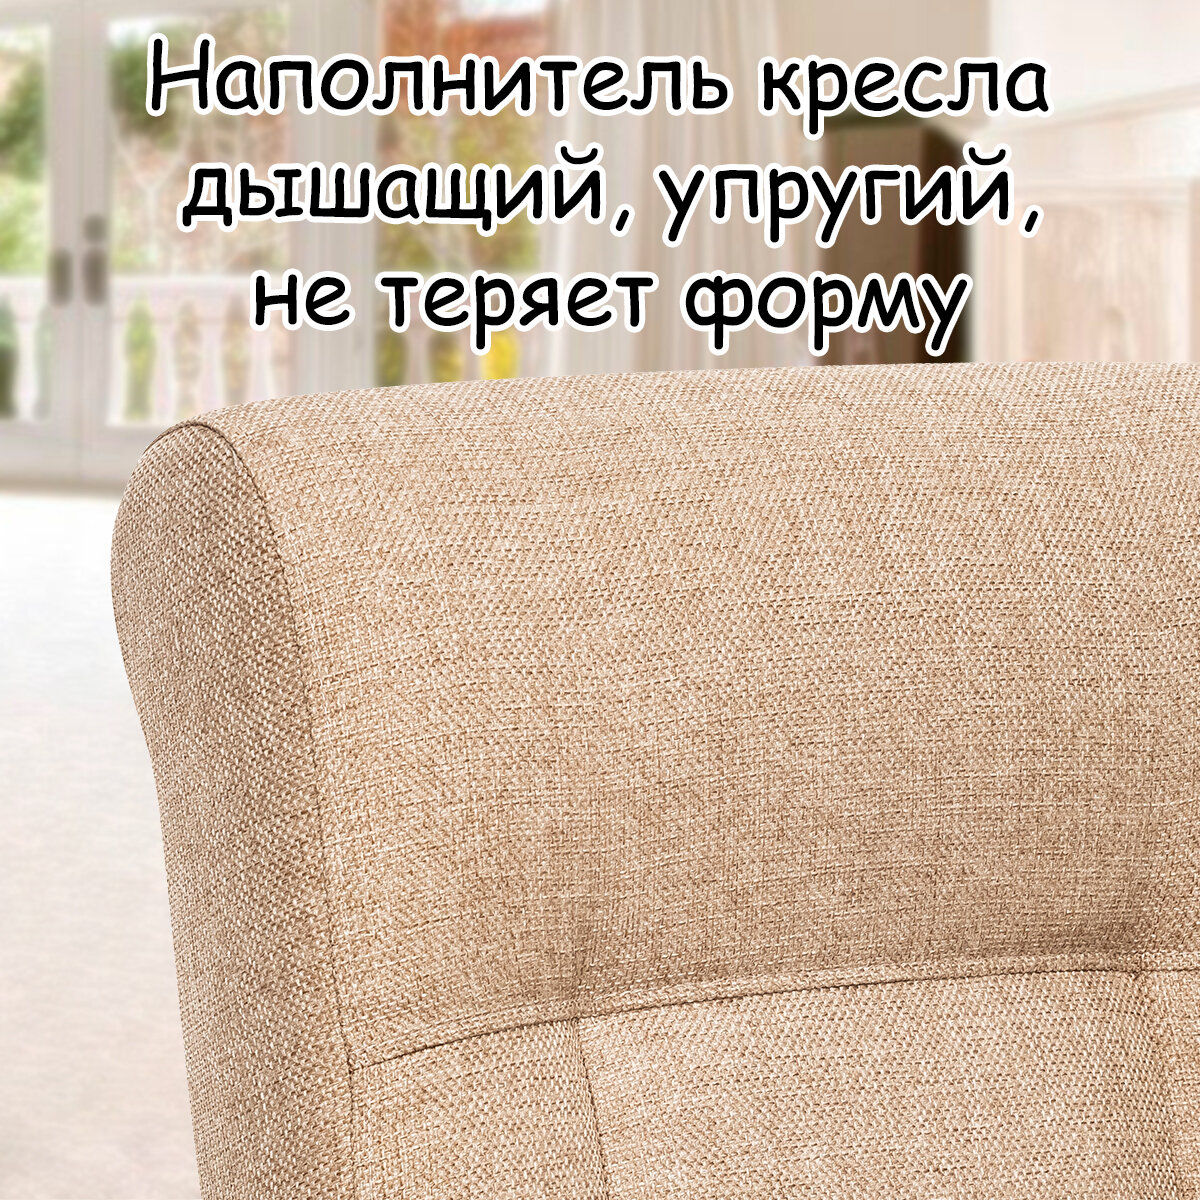 Кресло для взрослых 58.5х87х99 см, модель 51, malta, цвет: Мalta 03А (бежевый), каркас: Venge (черный) - фотография № 6